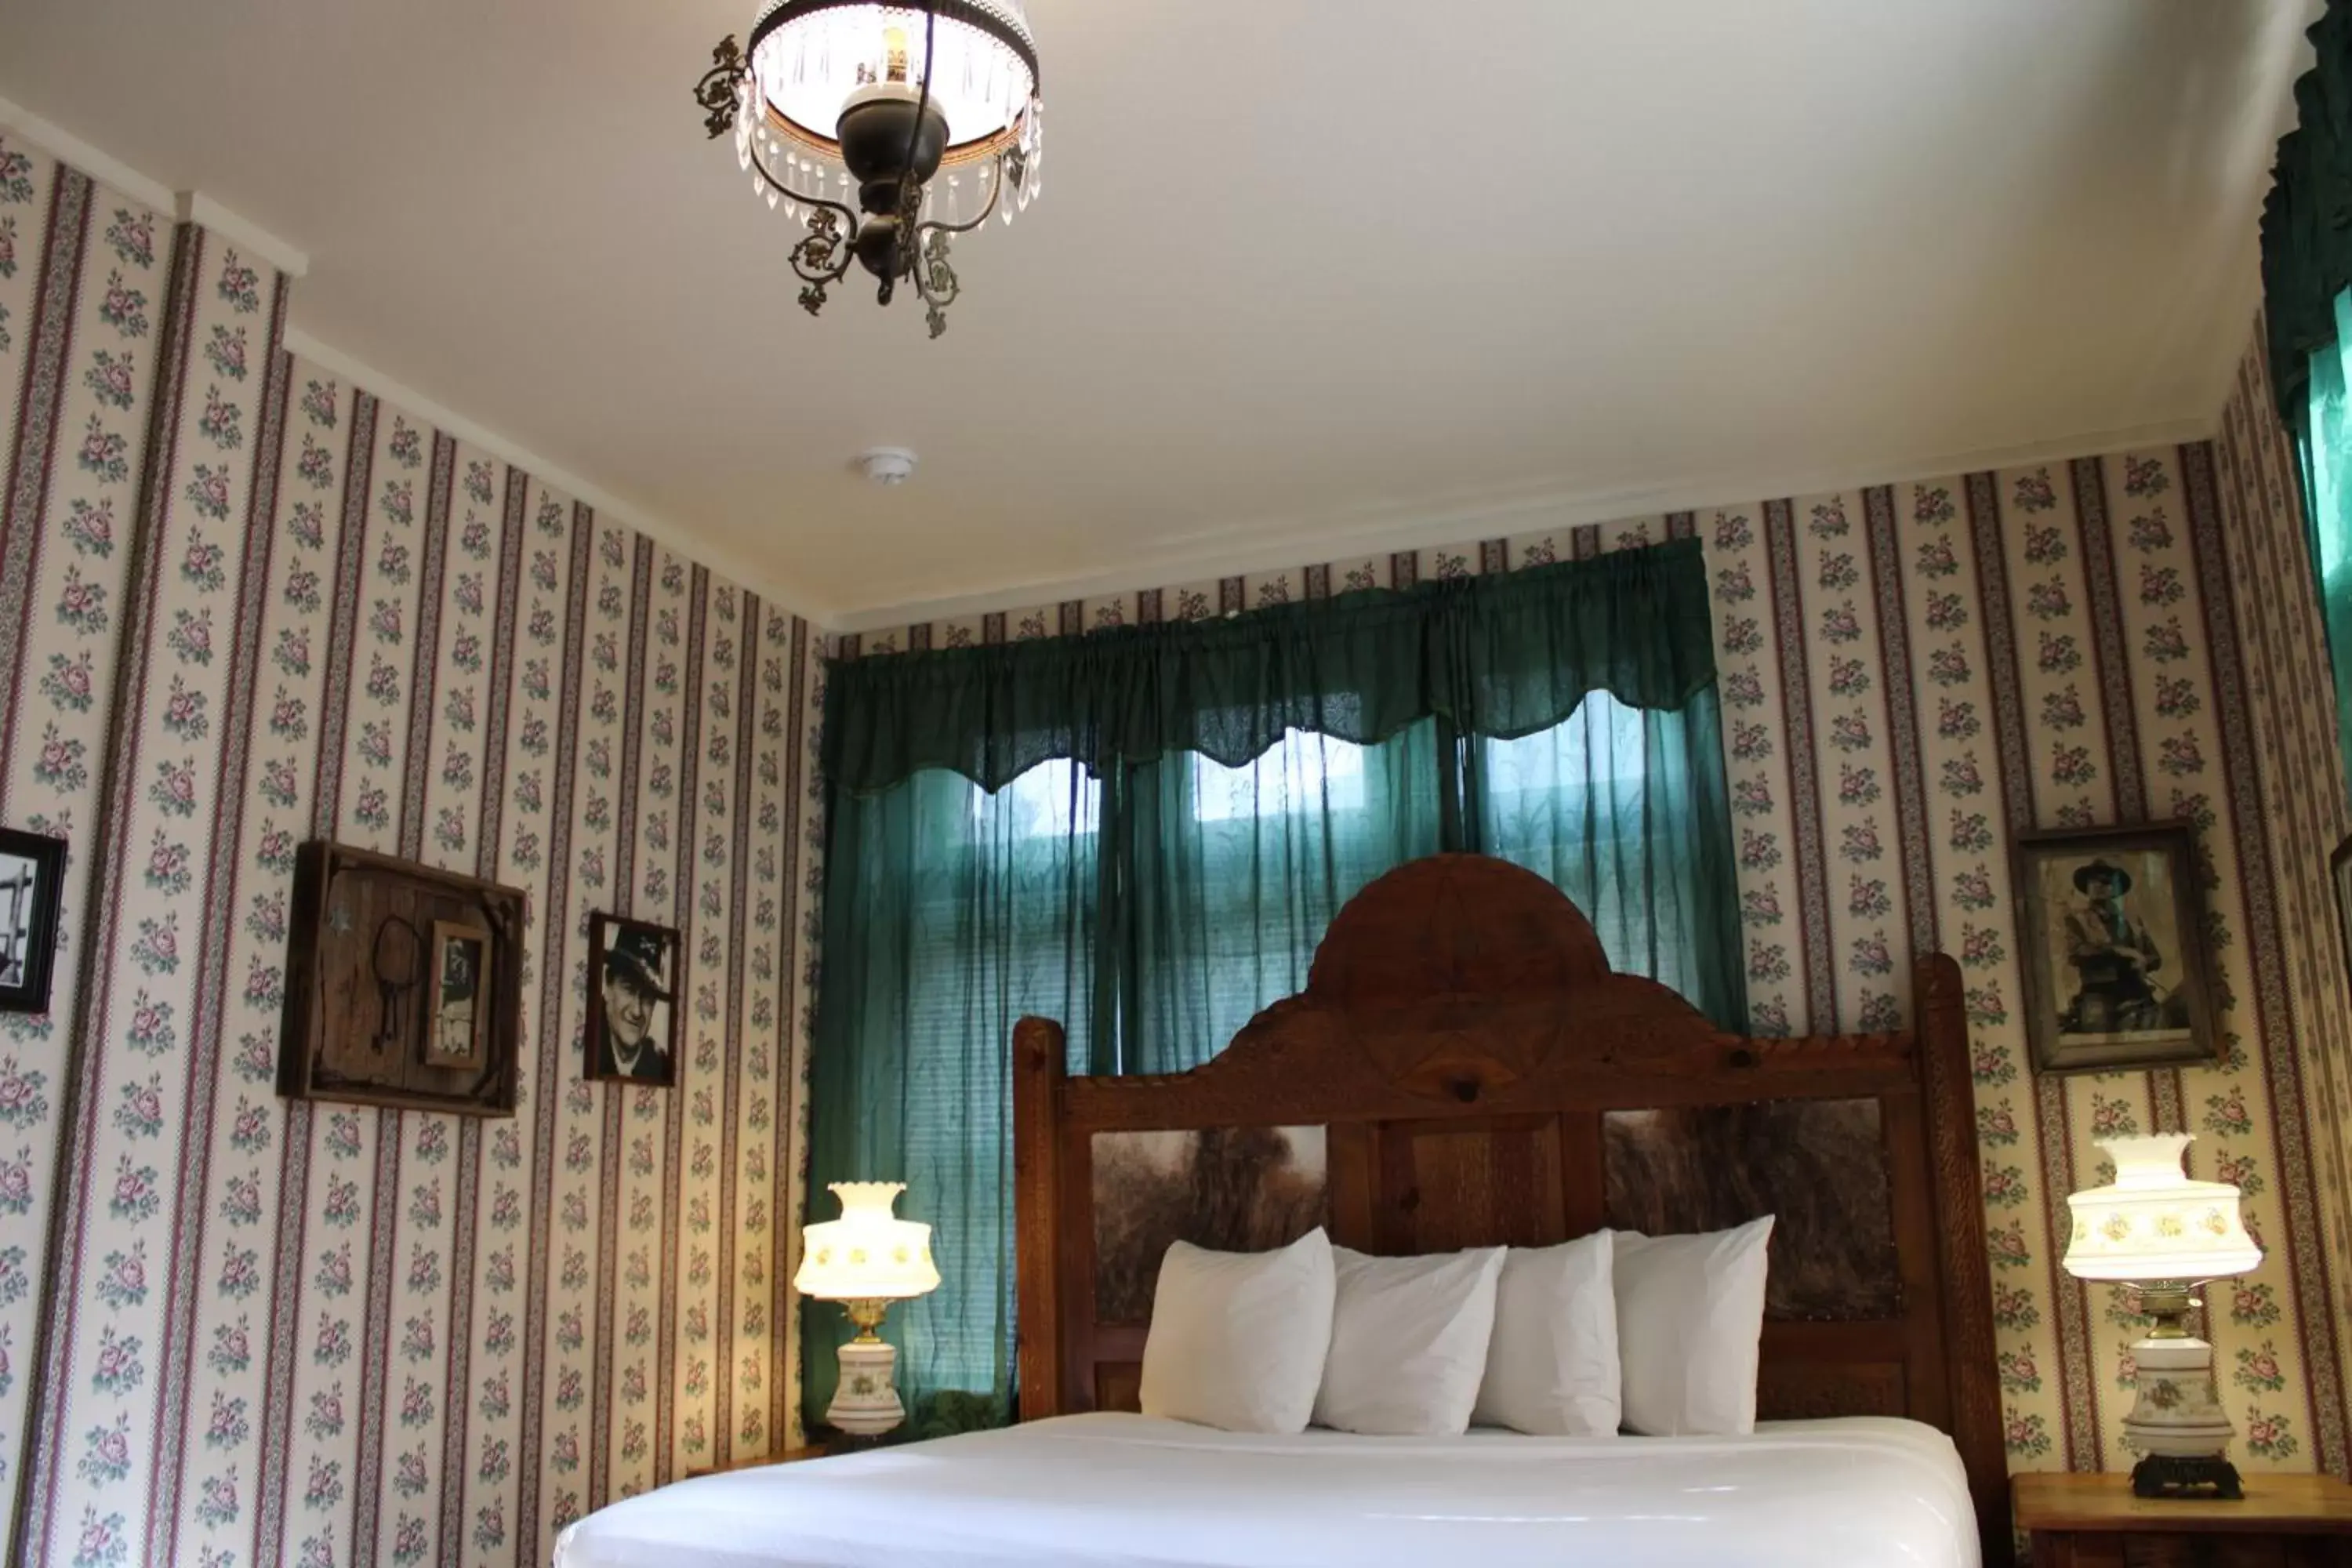 Bed in Copper Queen Hotel